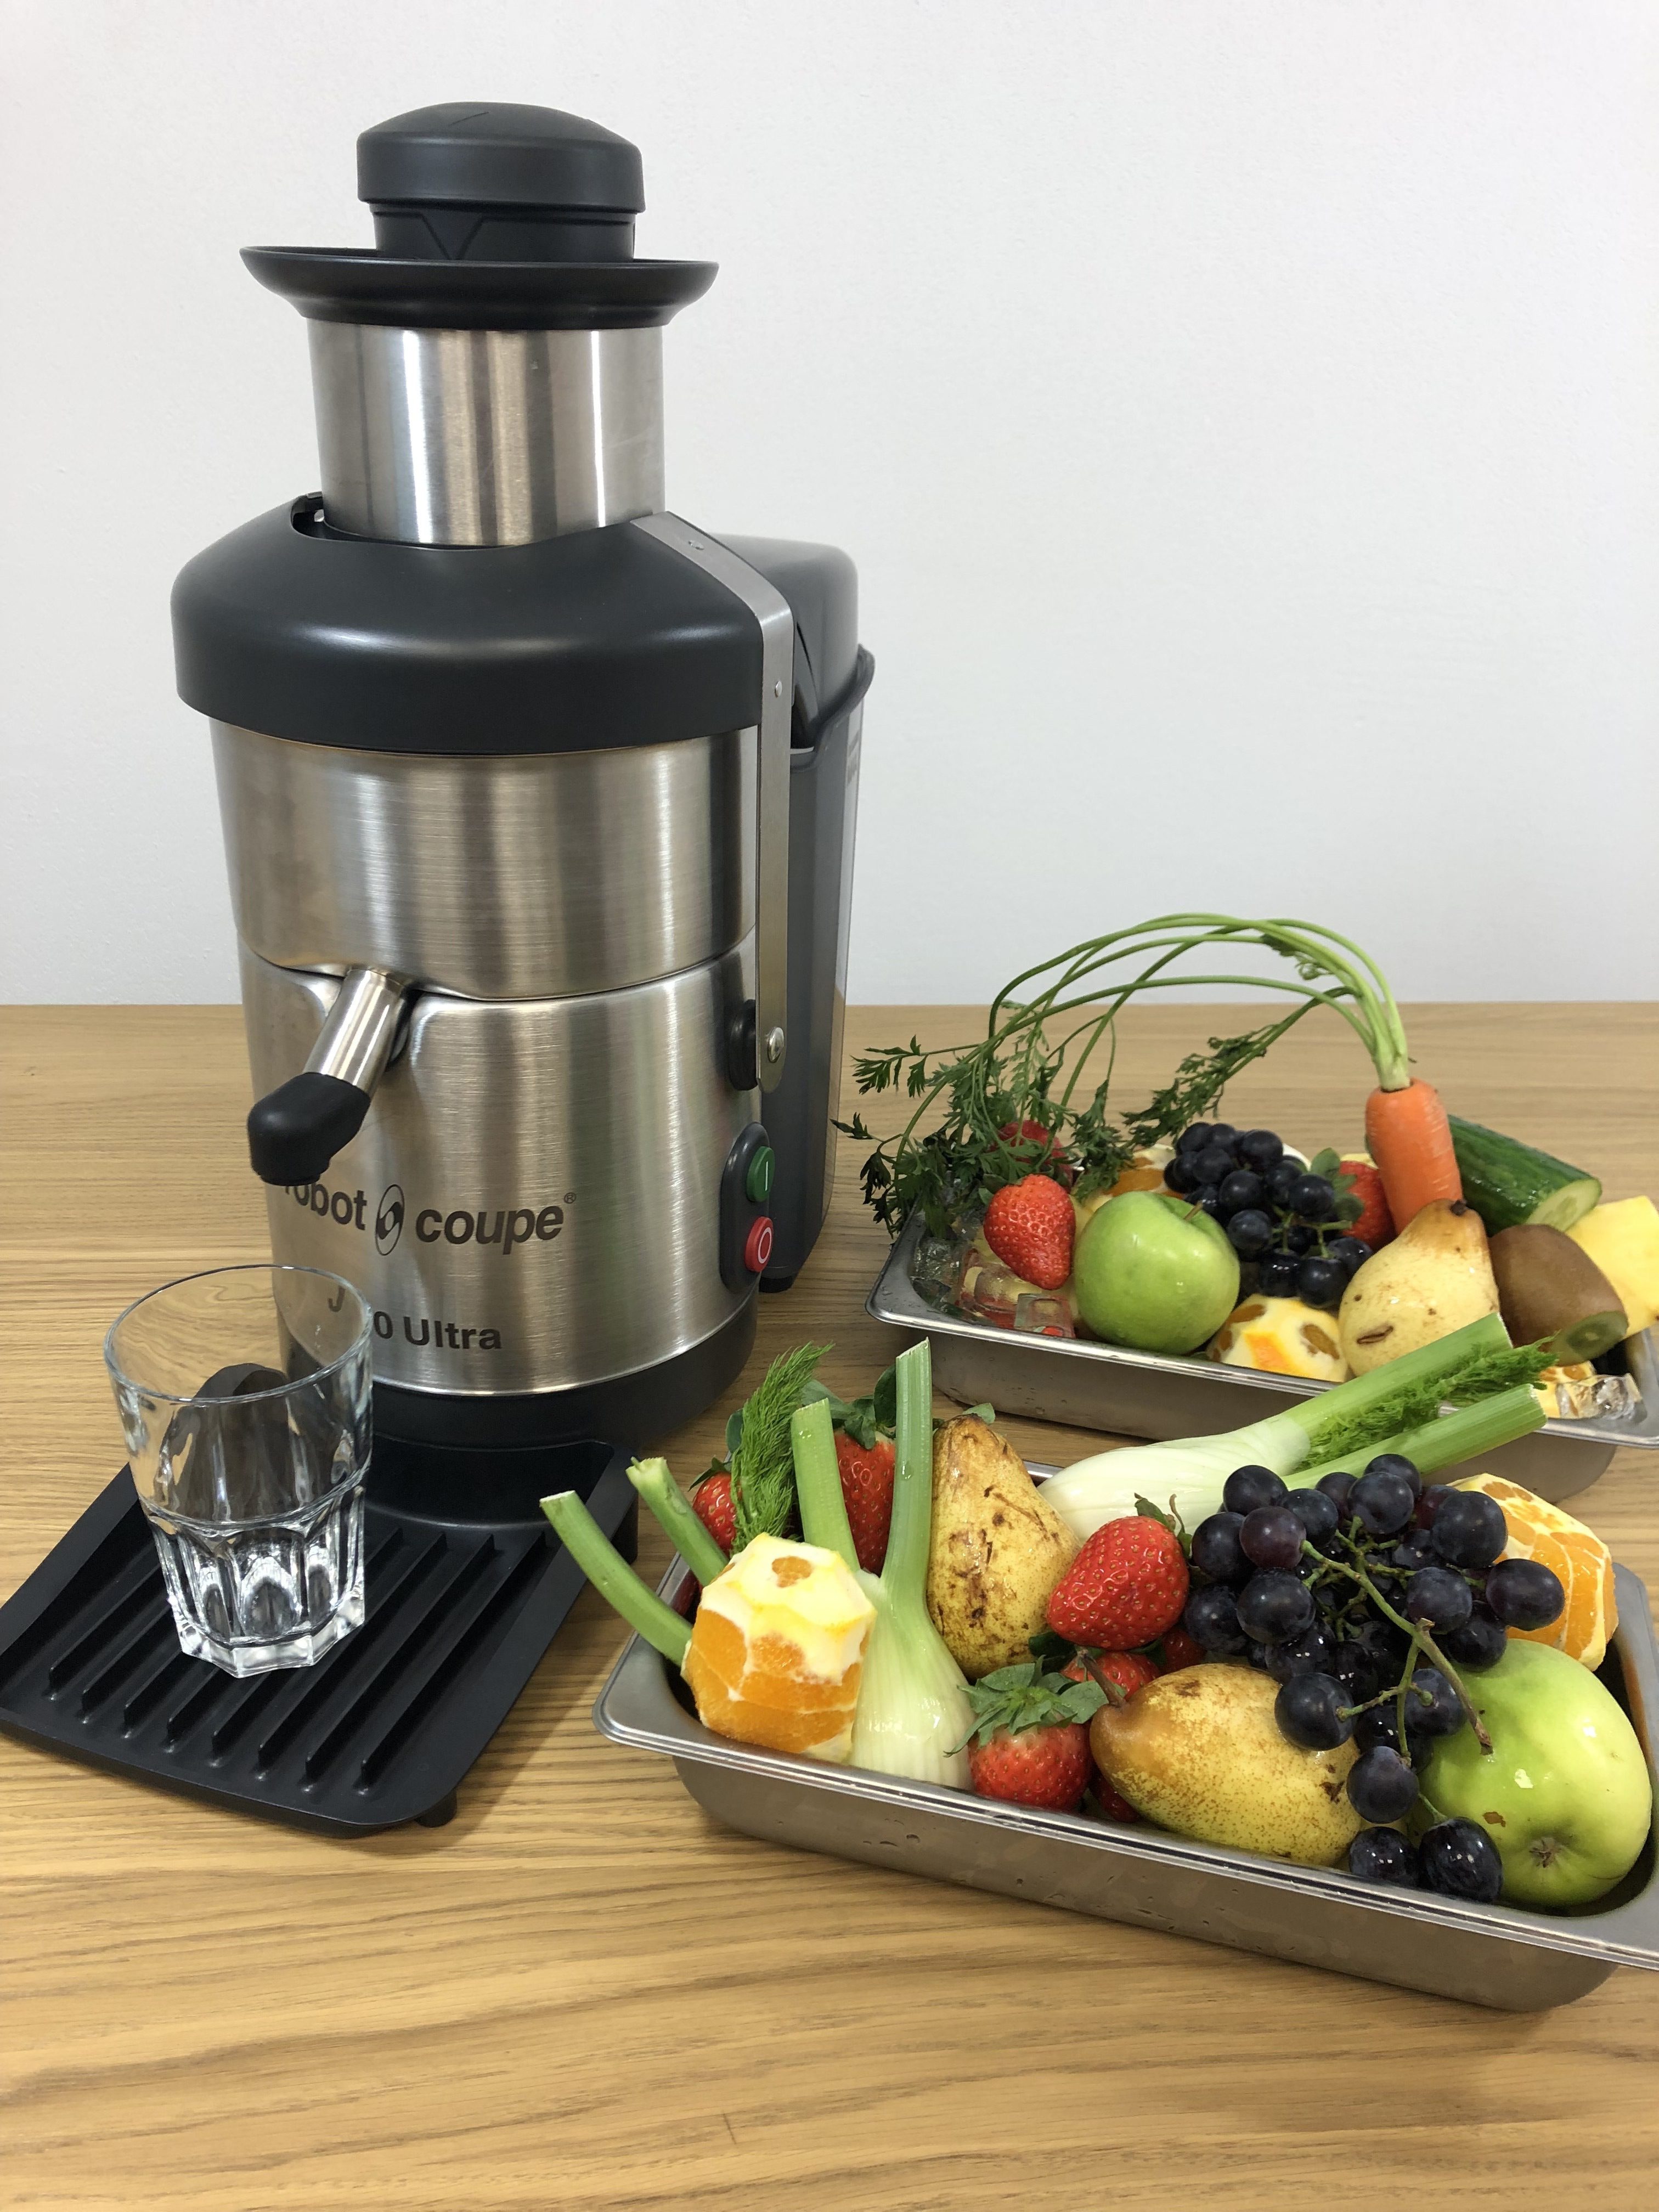 Test de la semaine : Le CL 50 Gourmet Coupe Légumes - Robot - Coupe - Le  Blog FourniResto